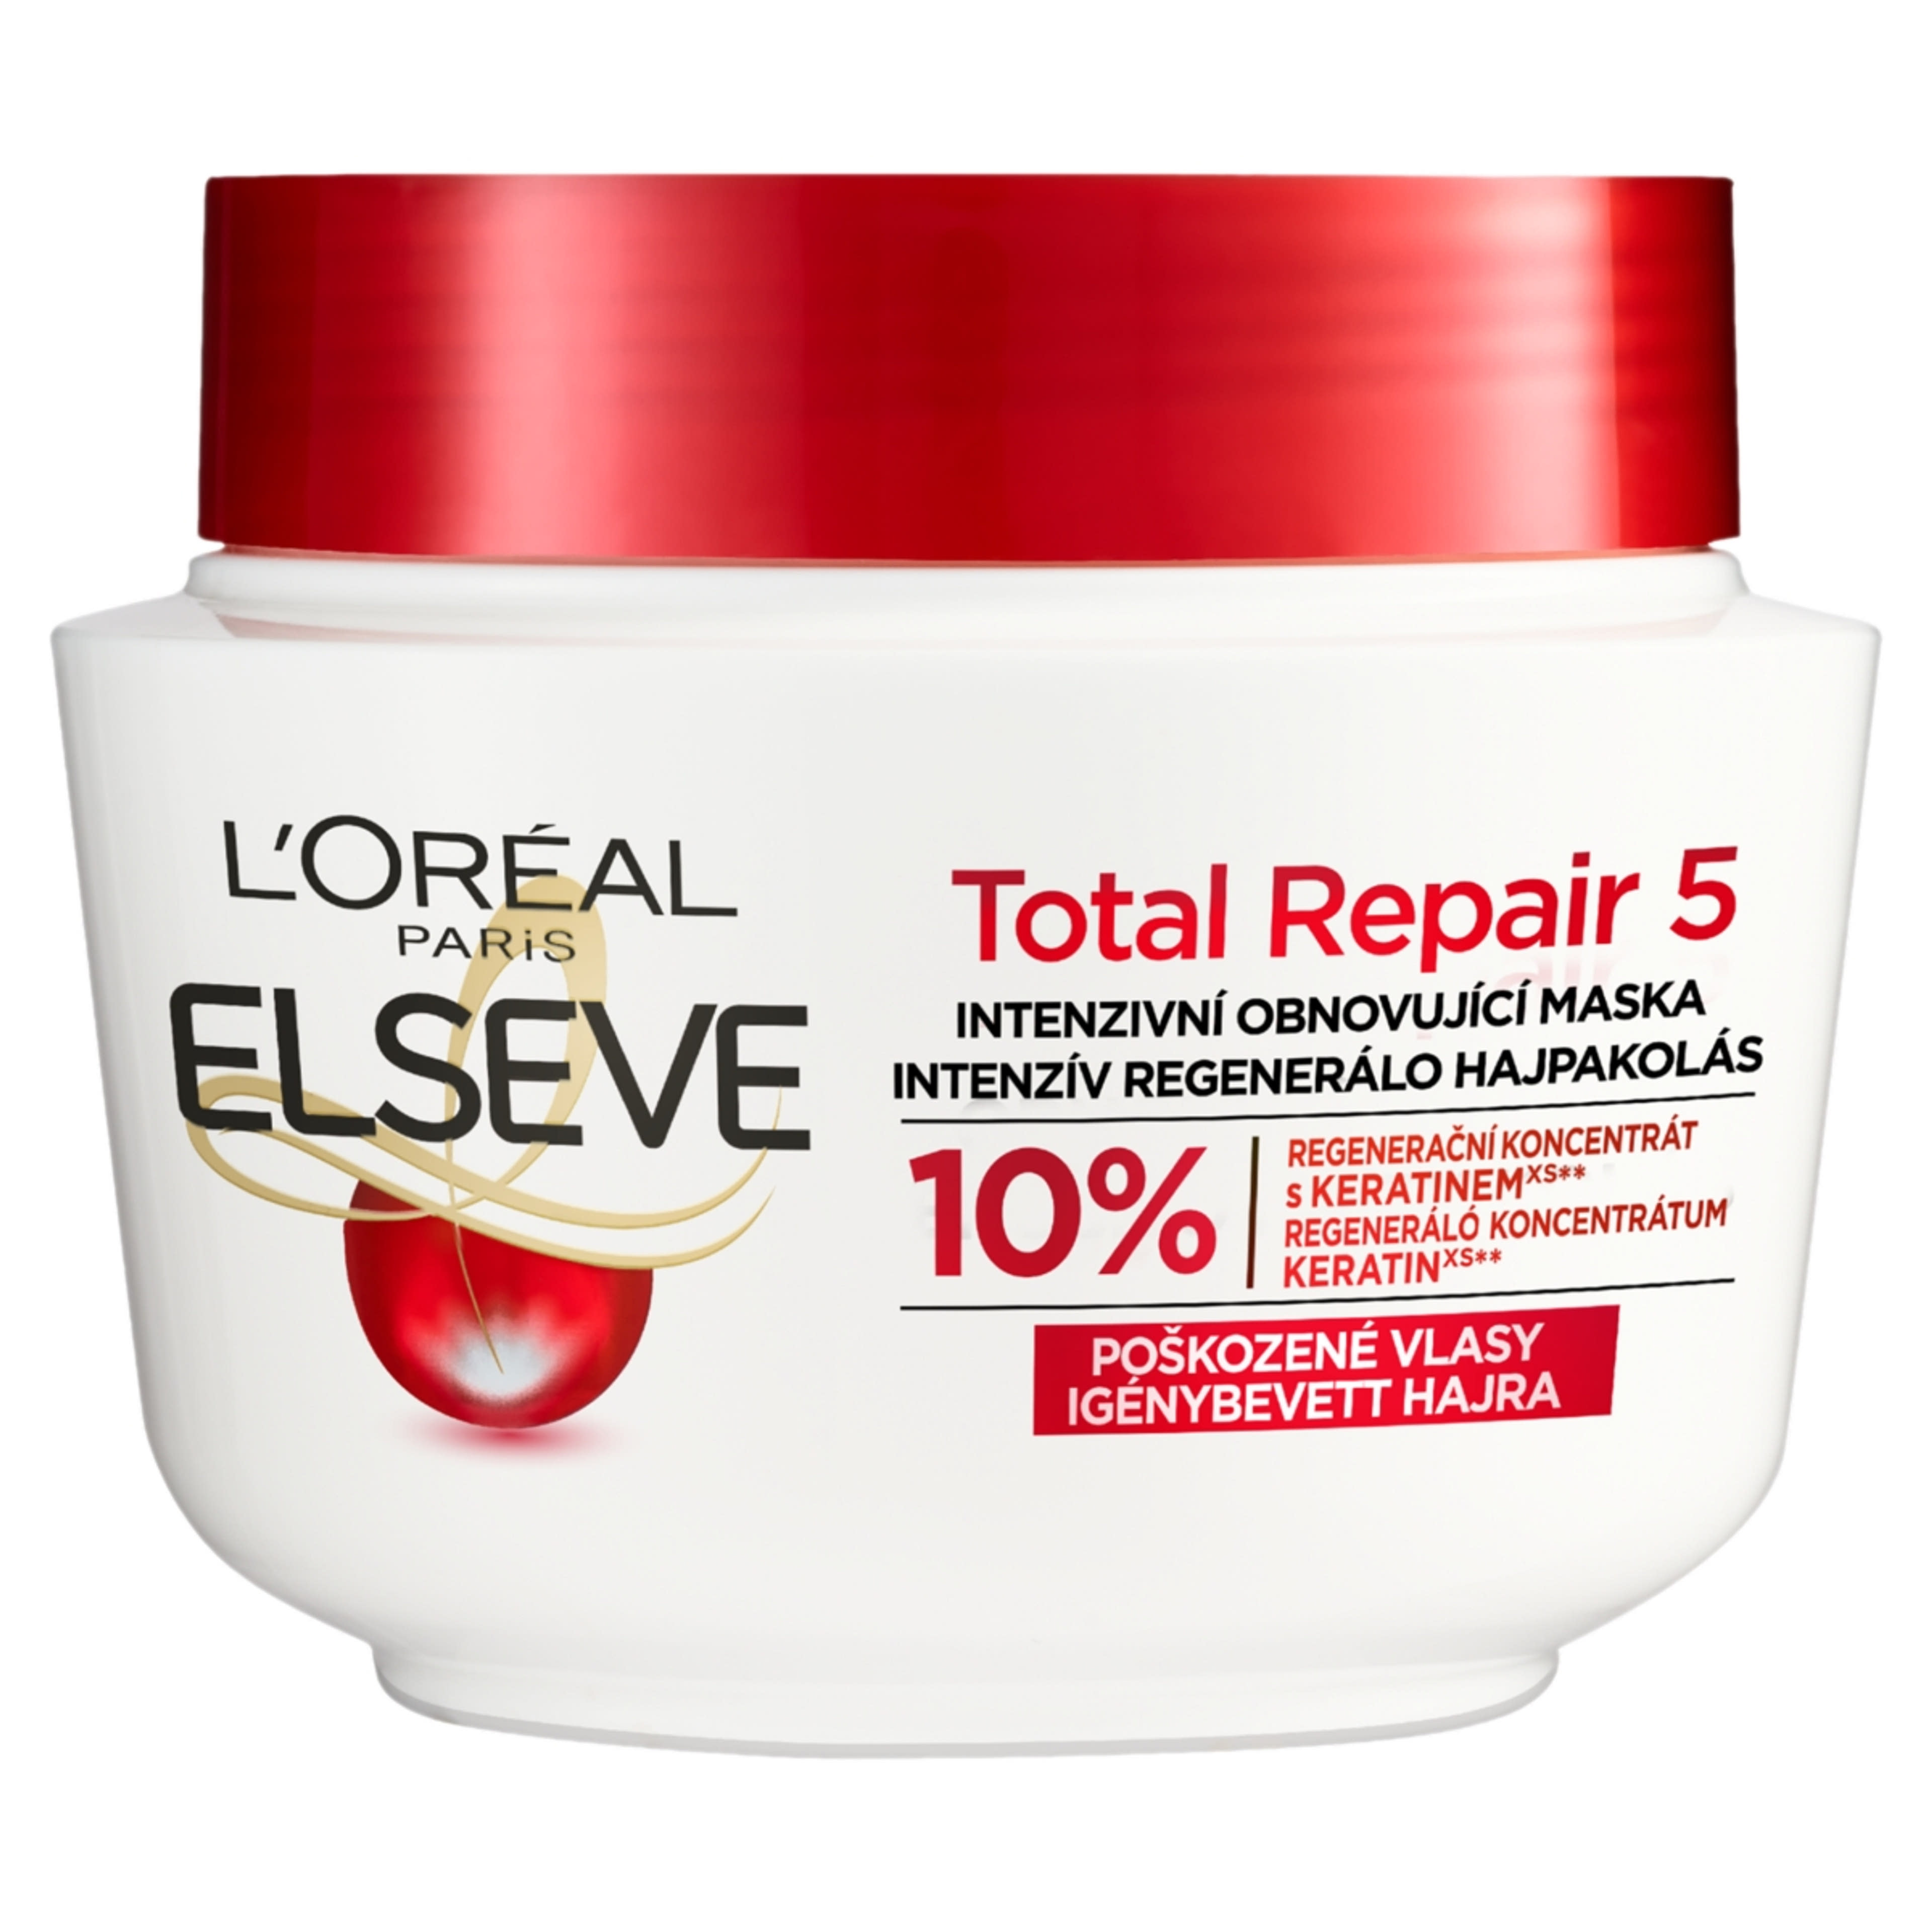 L'Oréal Paris Elseve Total Repair 5 regeneráló hajpakolás - 300 ml-1